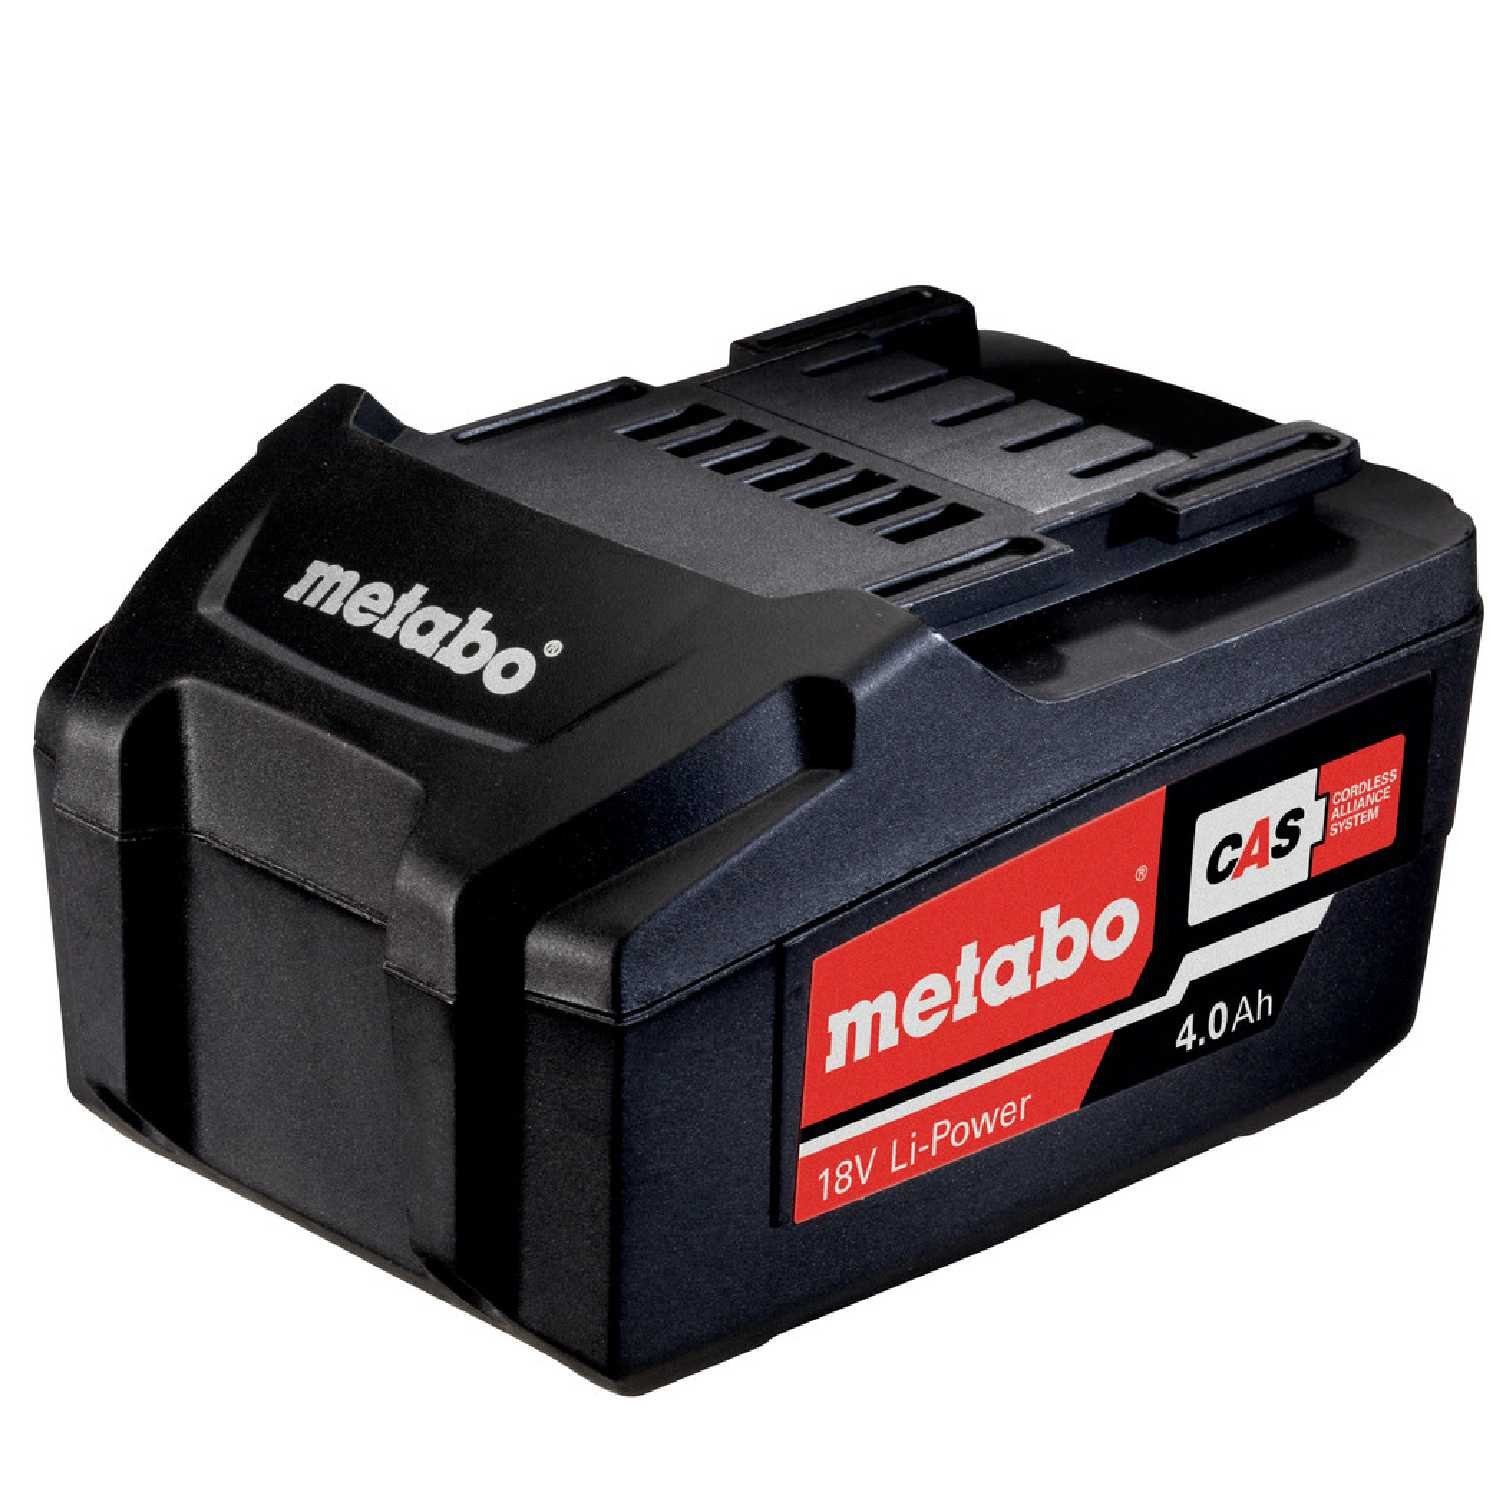 metabo Metabo 625591000 Akkupack Ah, Li-Power, 4,0 Akku AIR mAh COOLED V, 18 4000